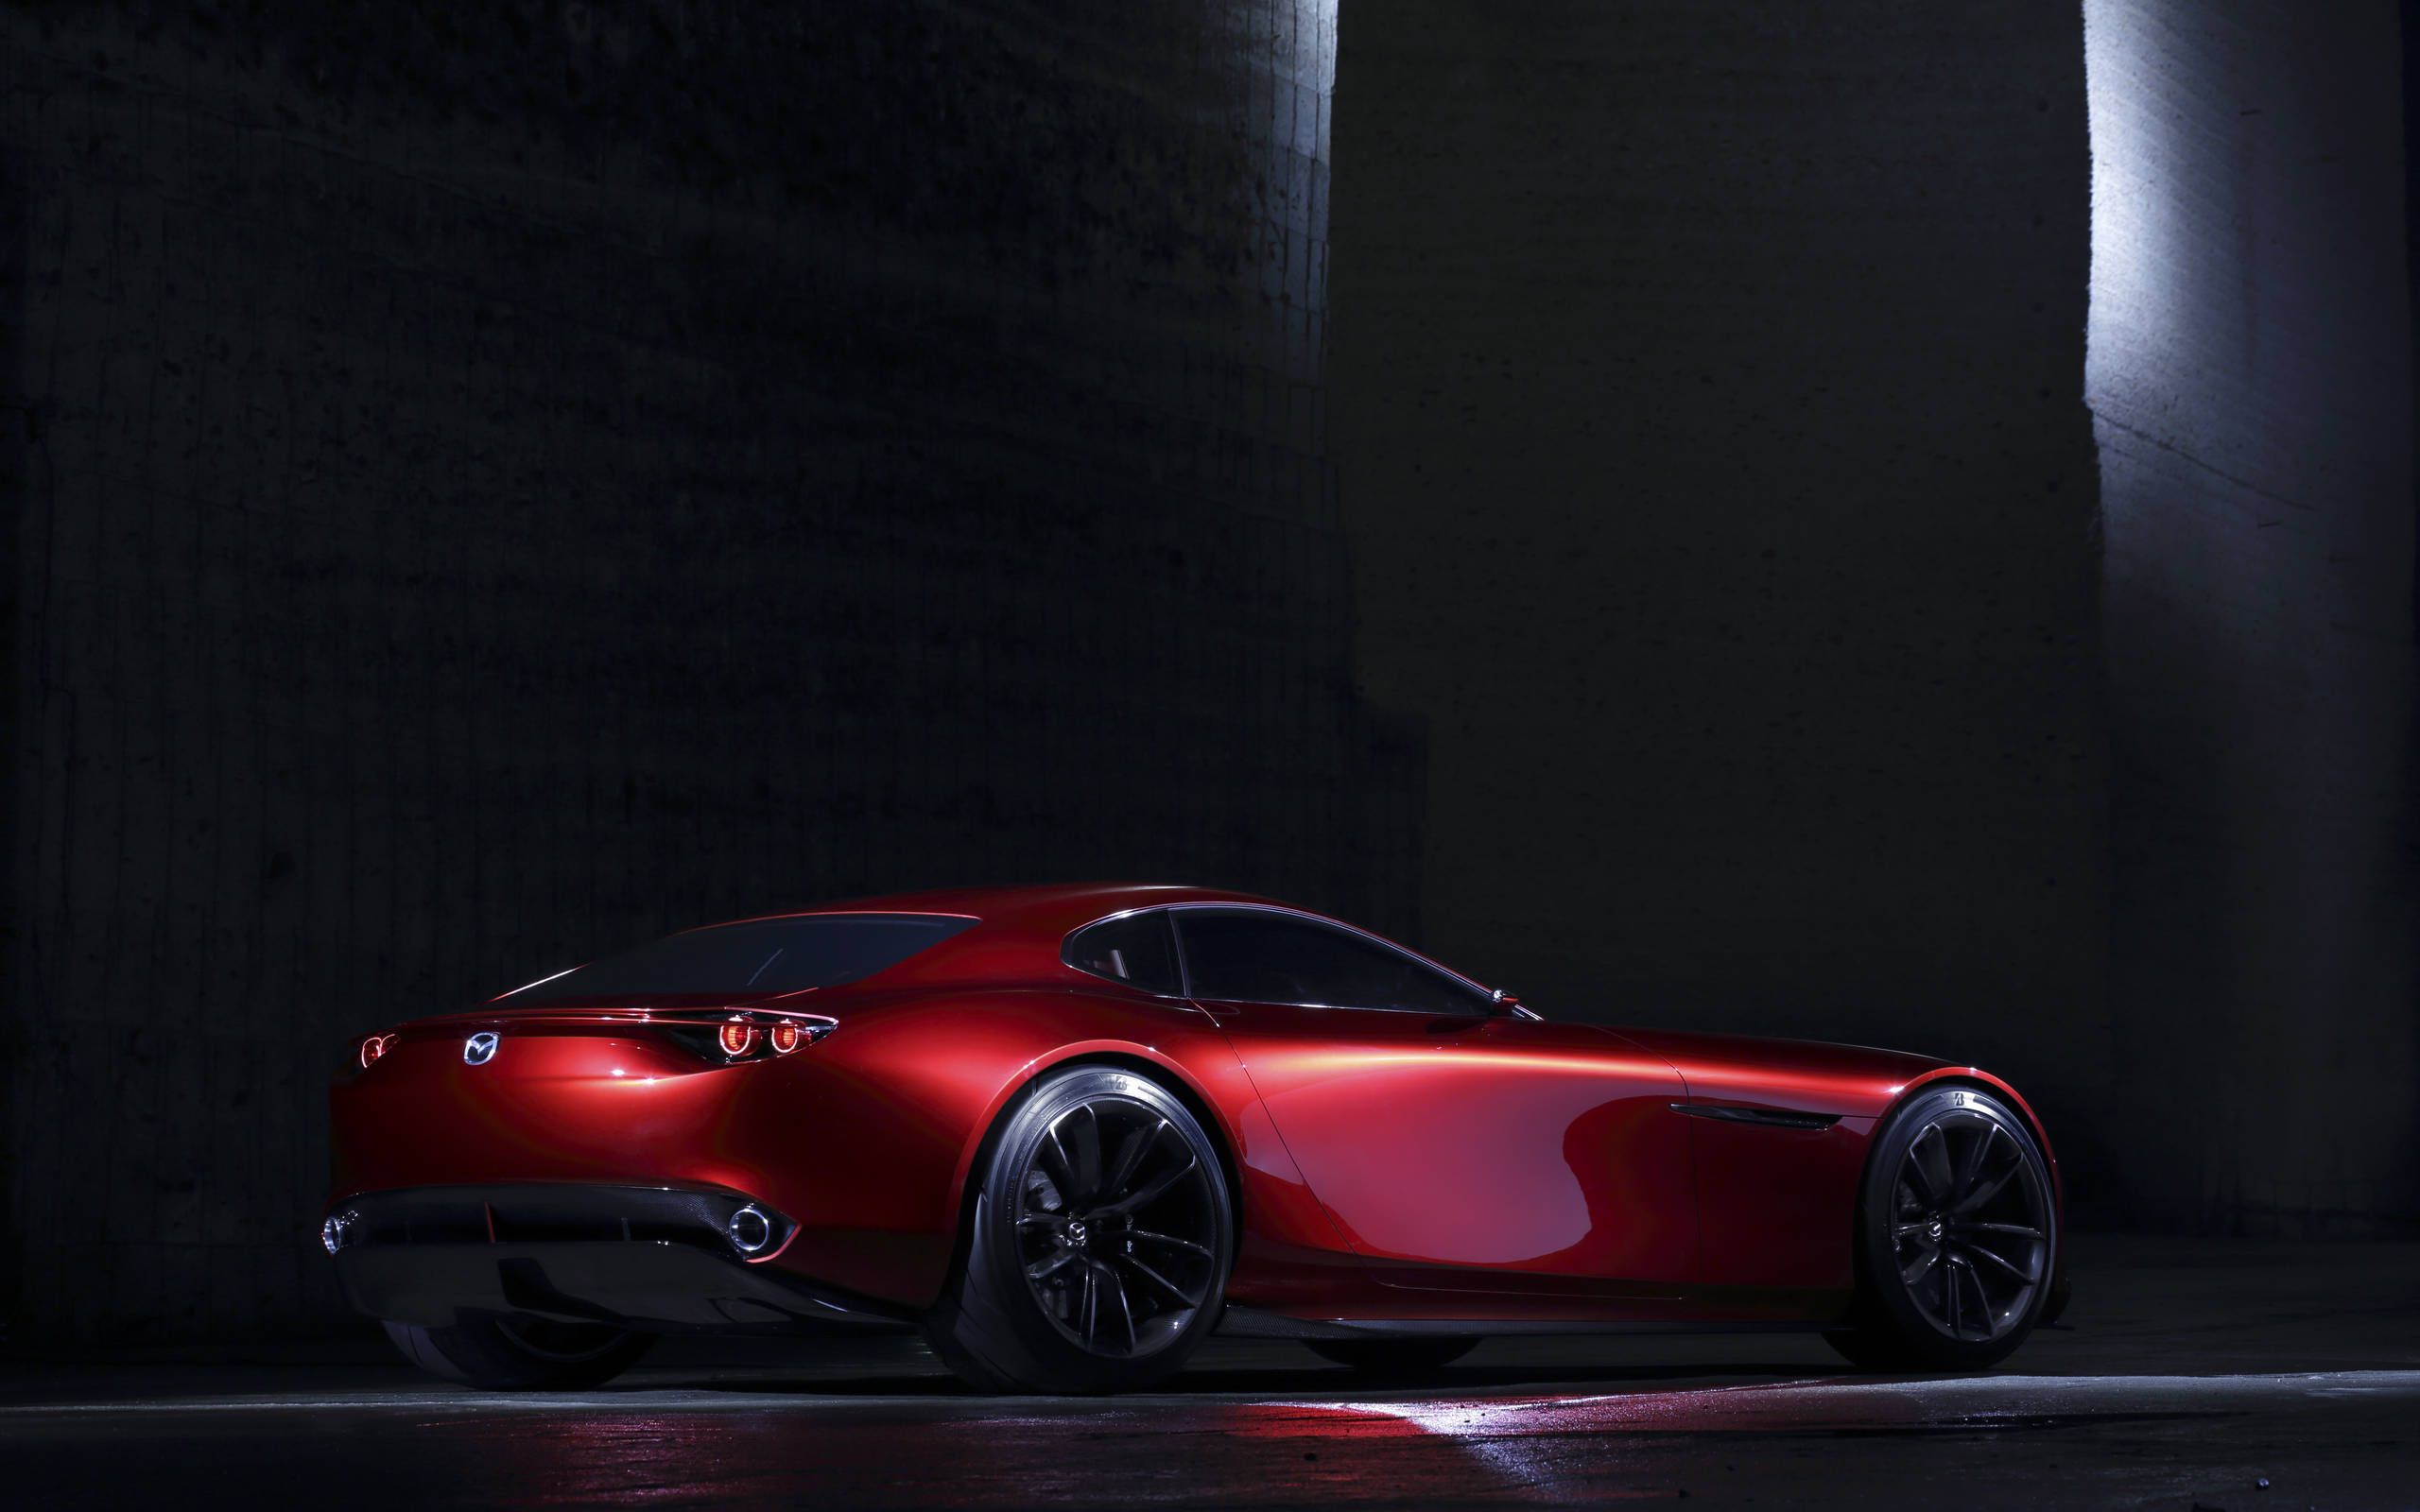 Gallery: Mazda RX Vision Tokyo concept